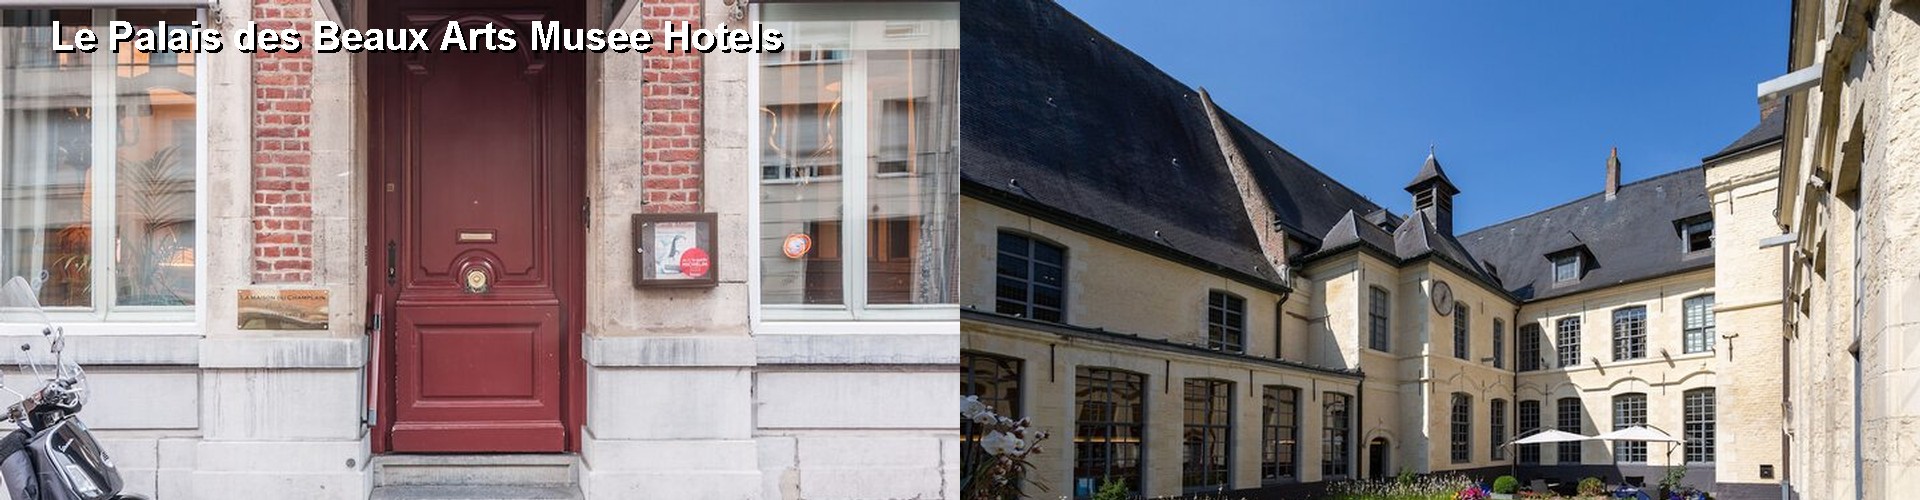 5 Best Hotels near Le Palais des Beaux Arts Musee